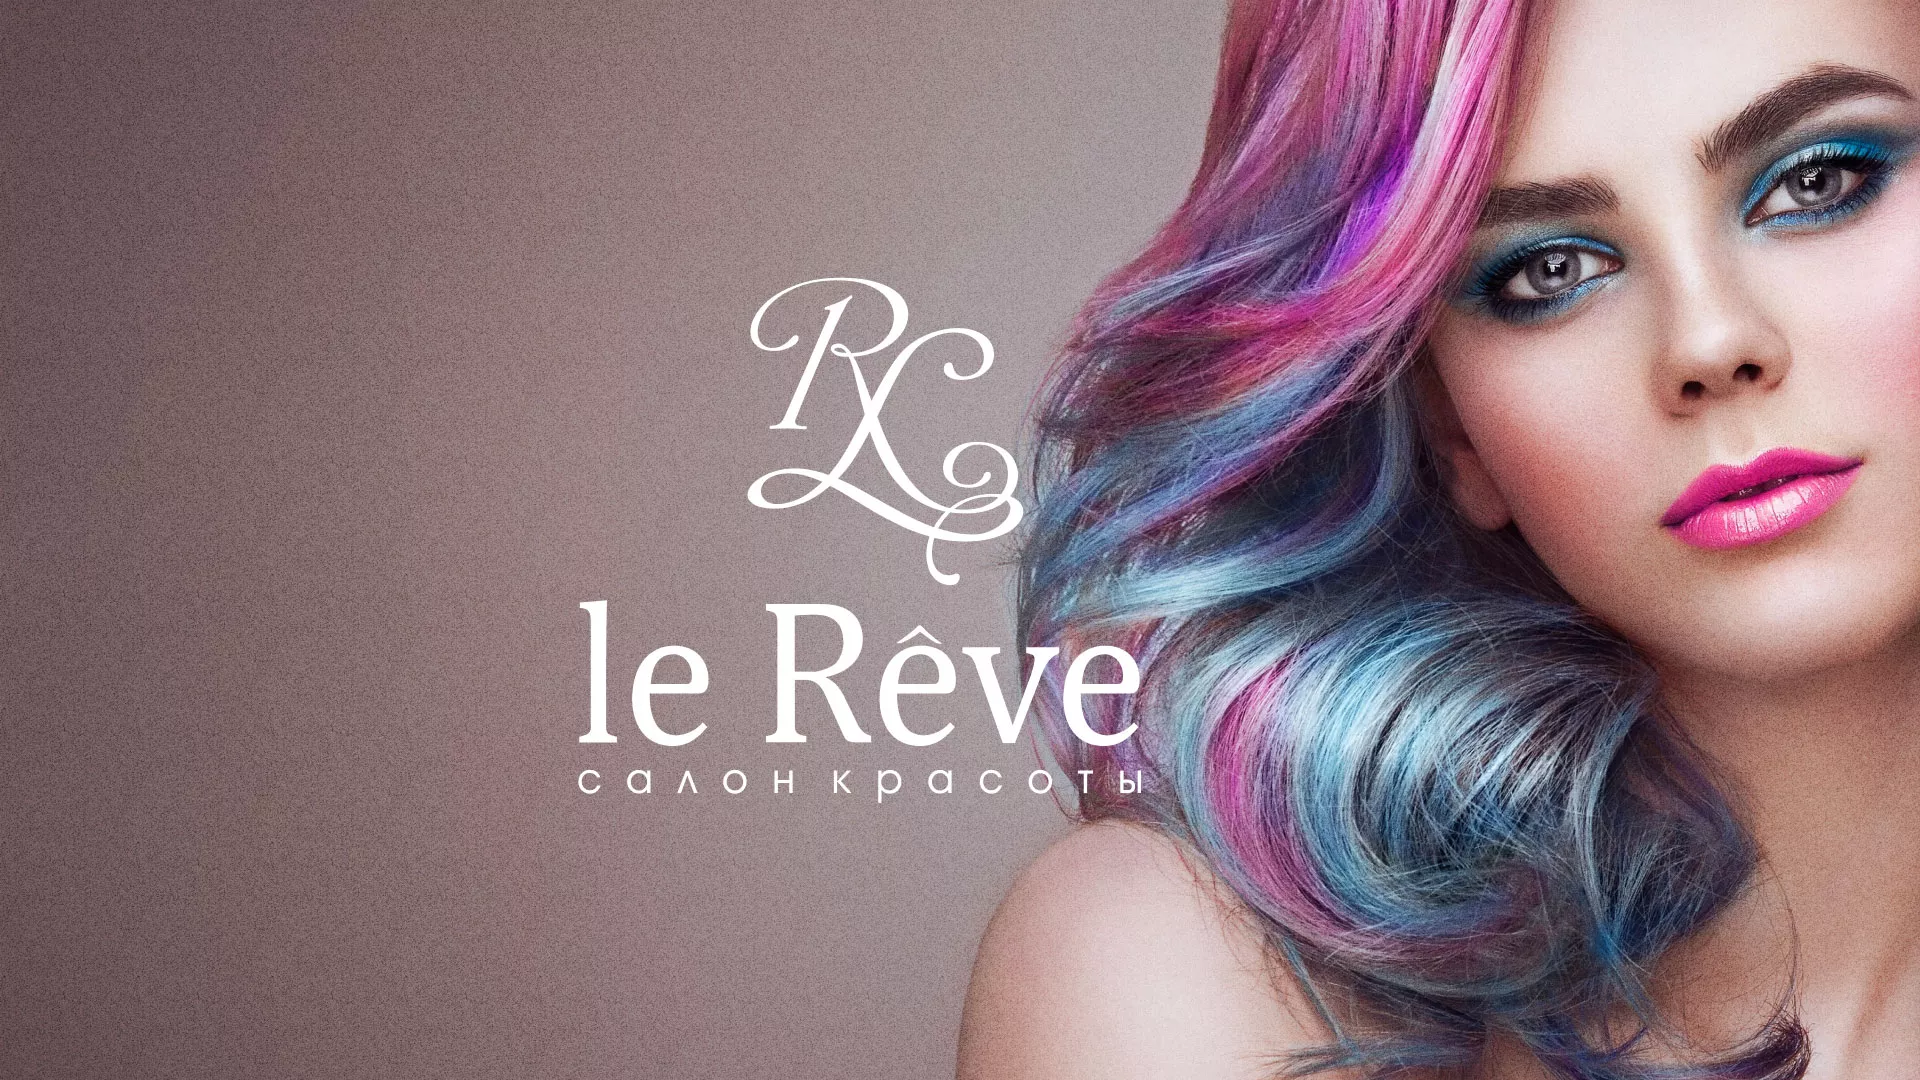 Создание сайта для салона красоты «Le Reve» в Алексеевке